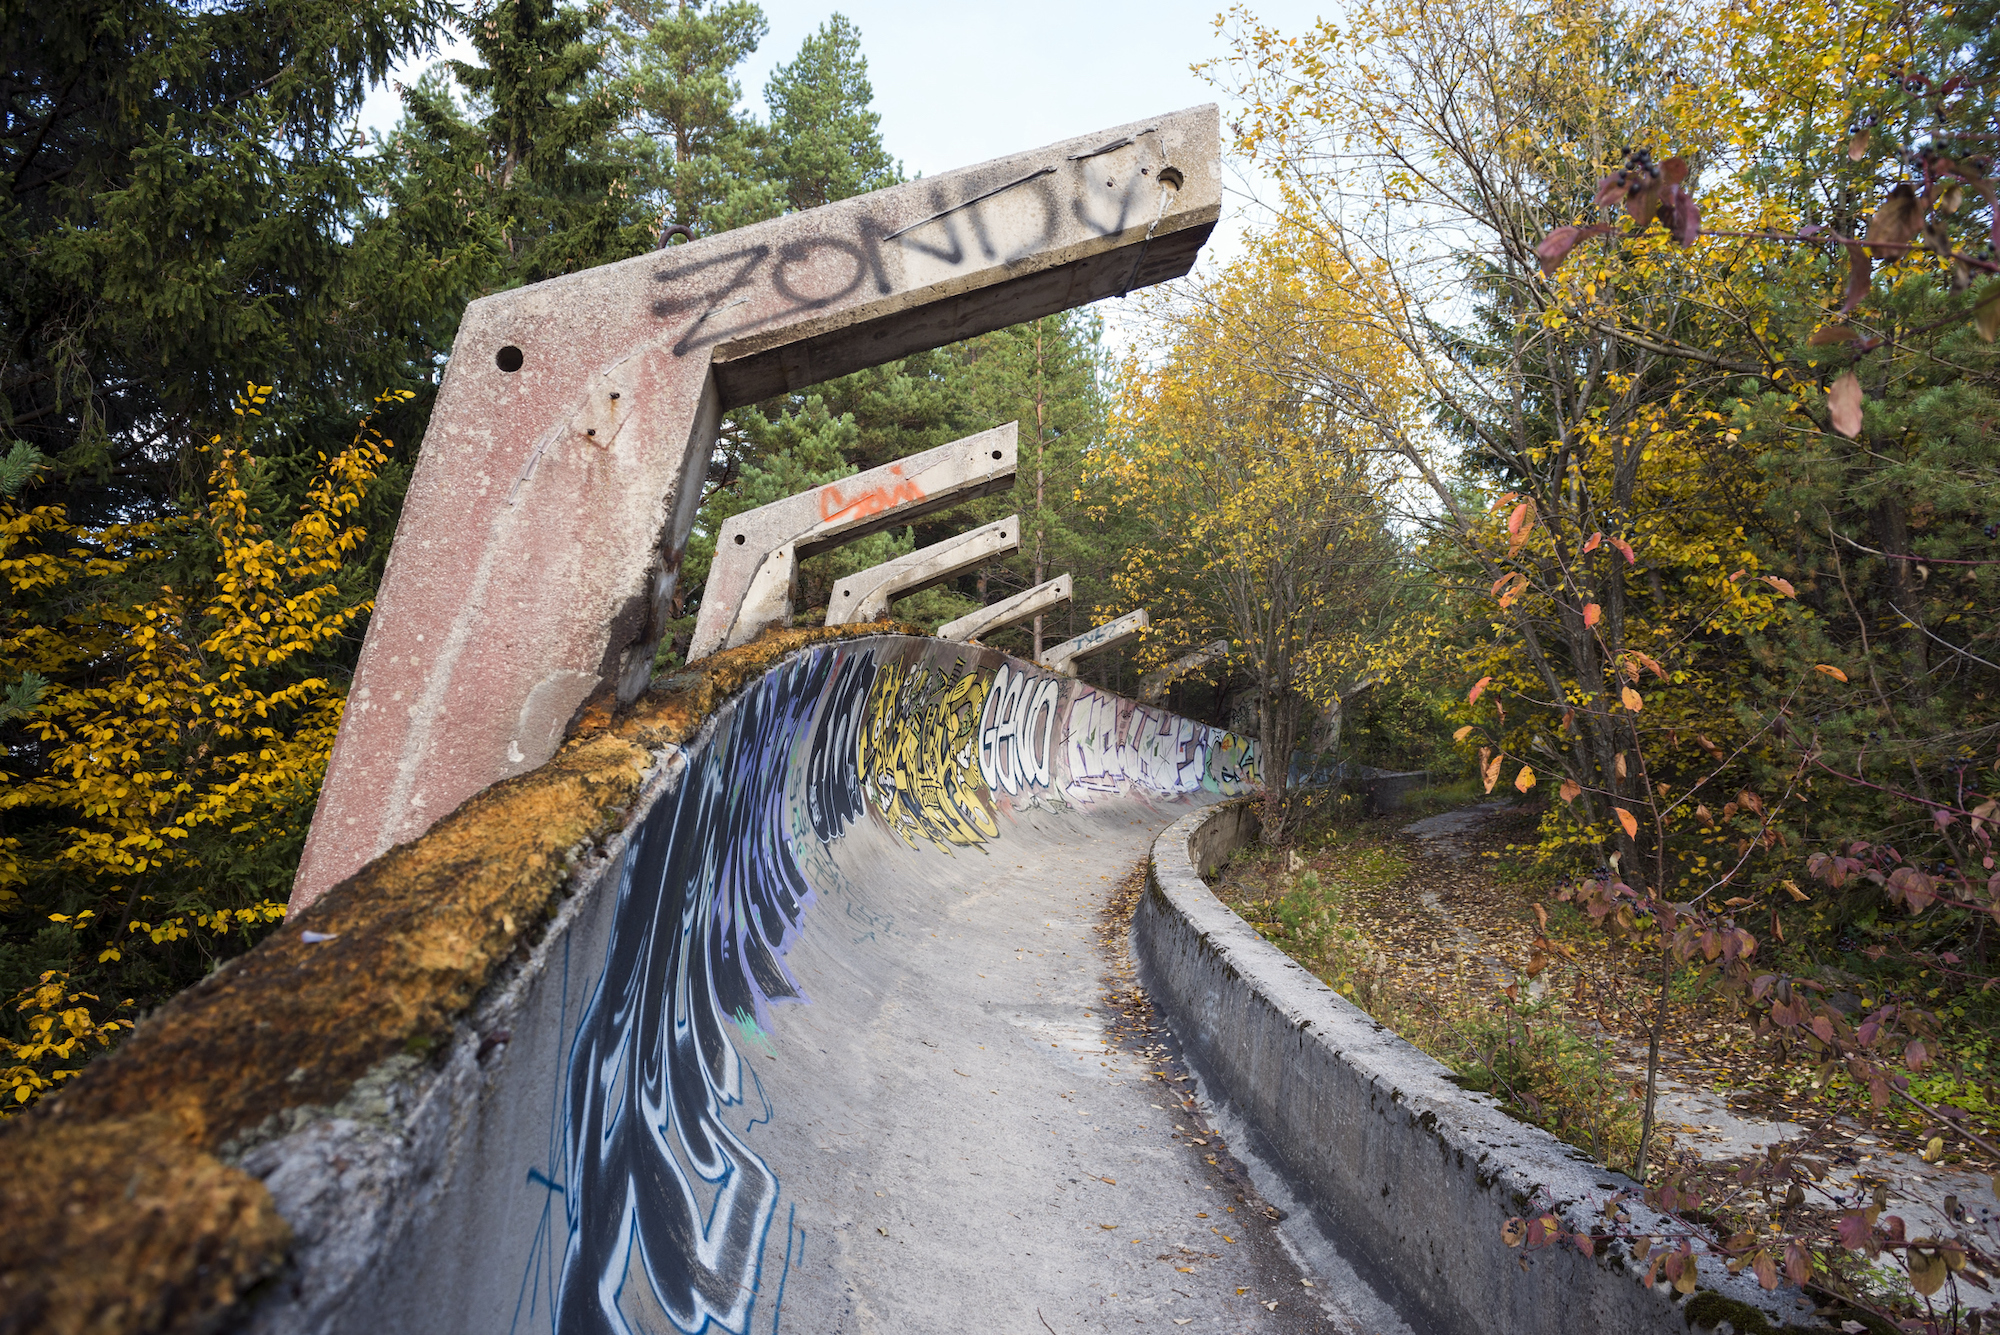 Abandoned 1984 Olympic bobsled track Sarajevo